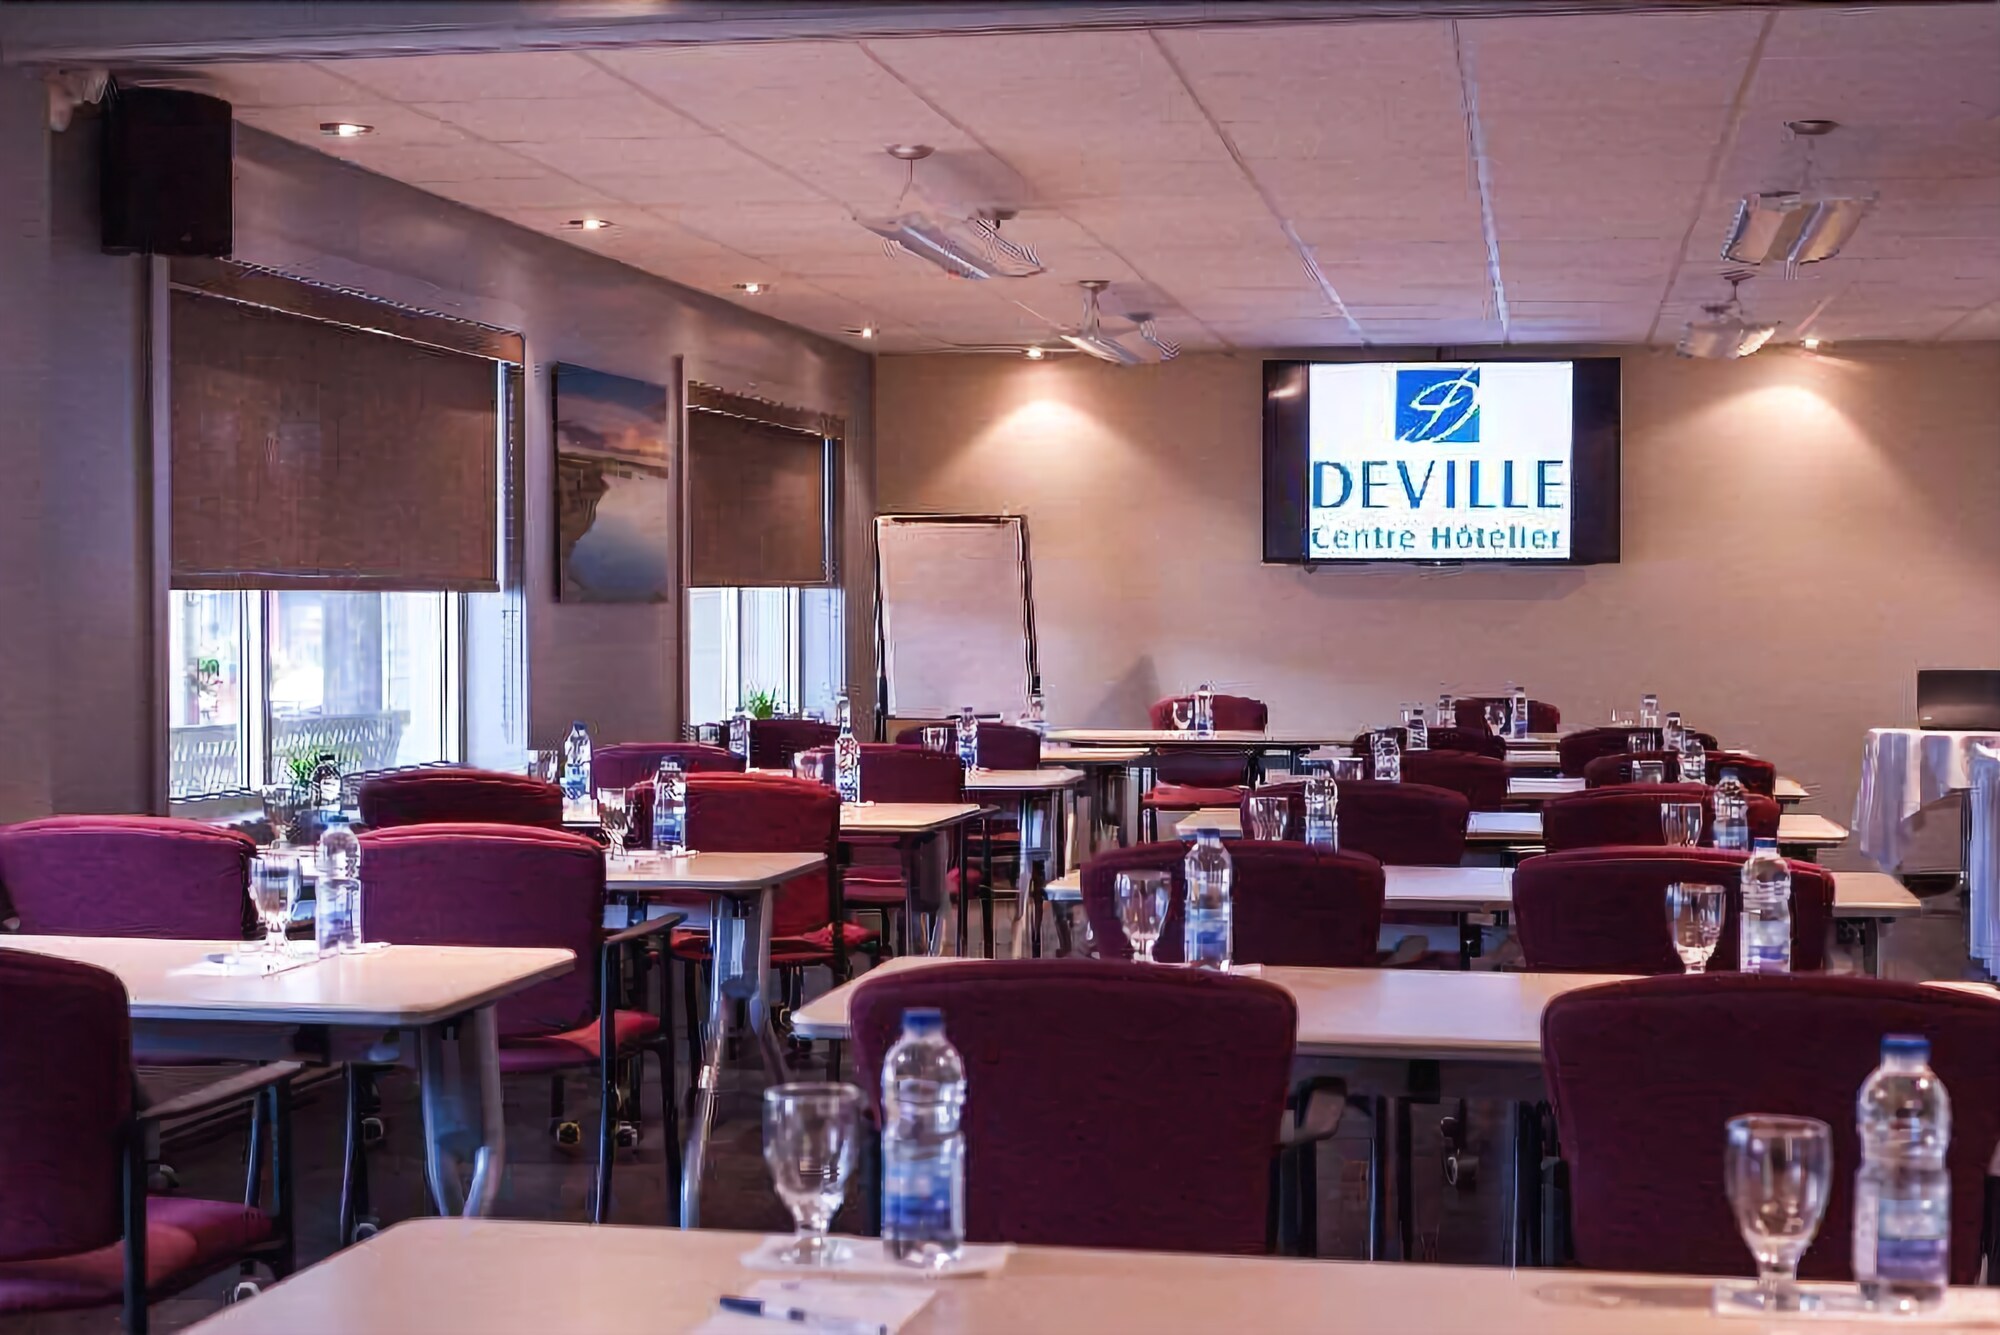 Deville Centre Hotelier